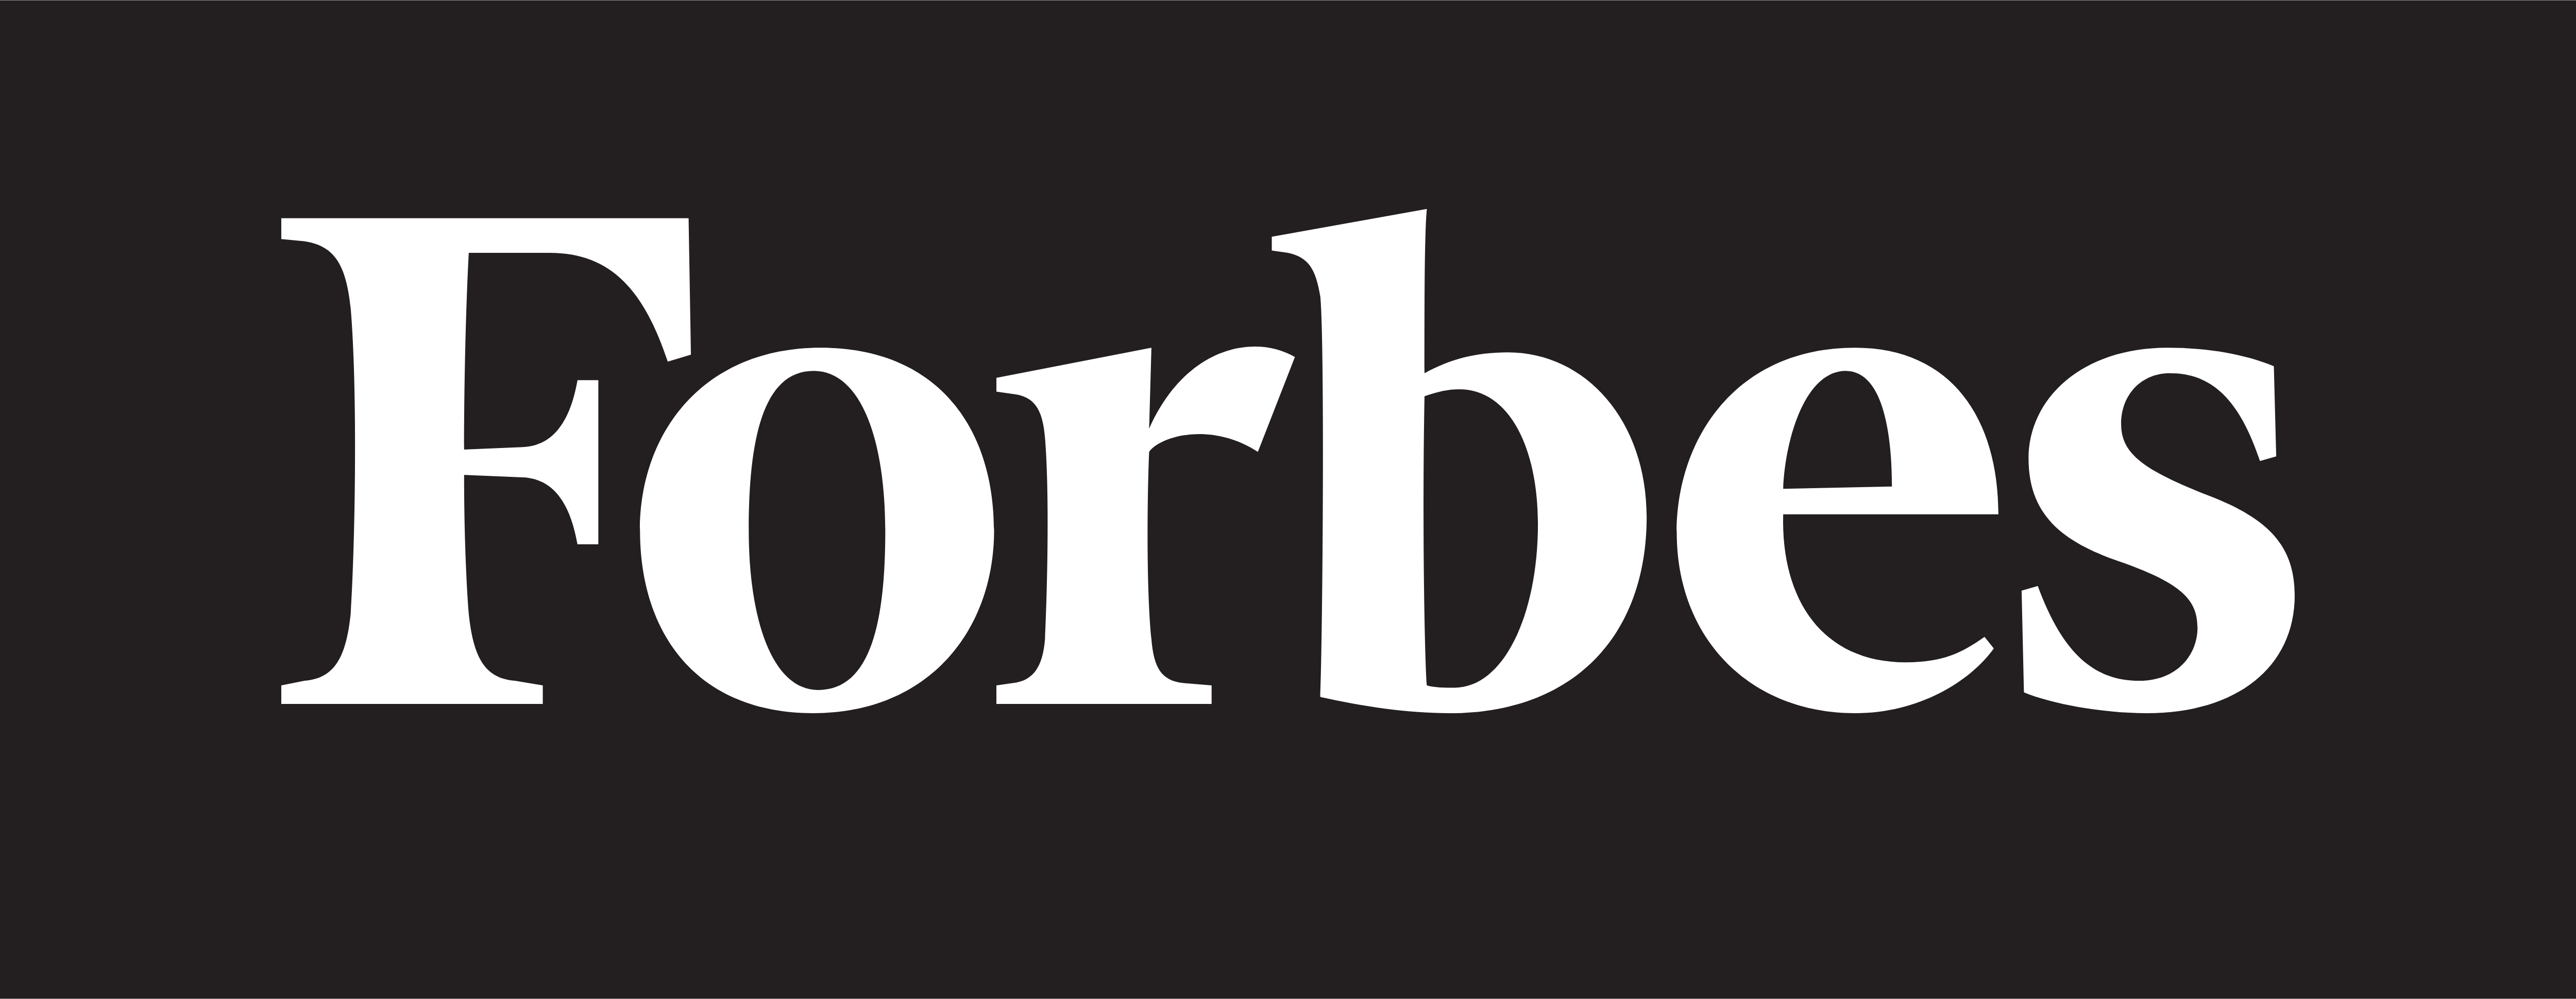 Forbes – Unduhan Logo